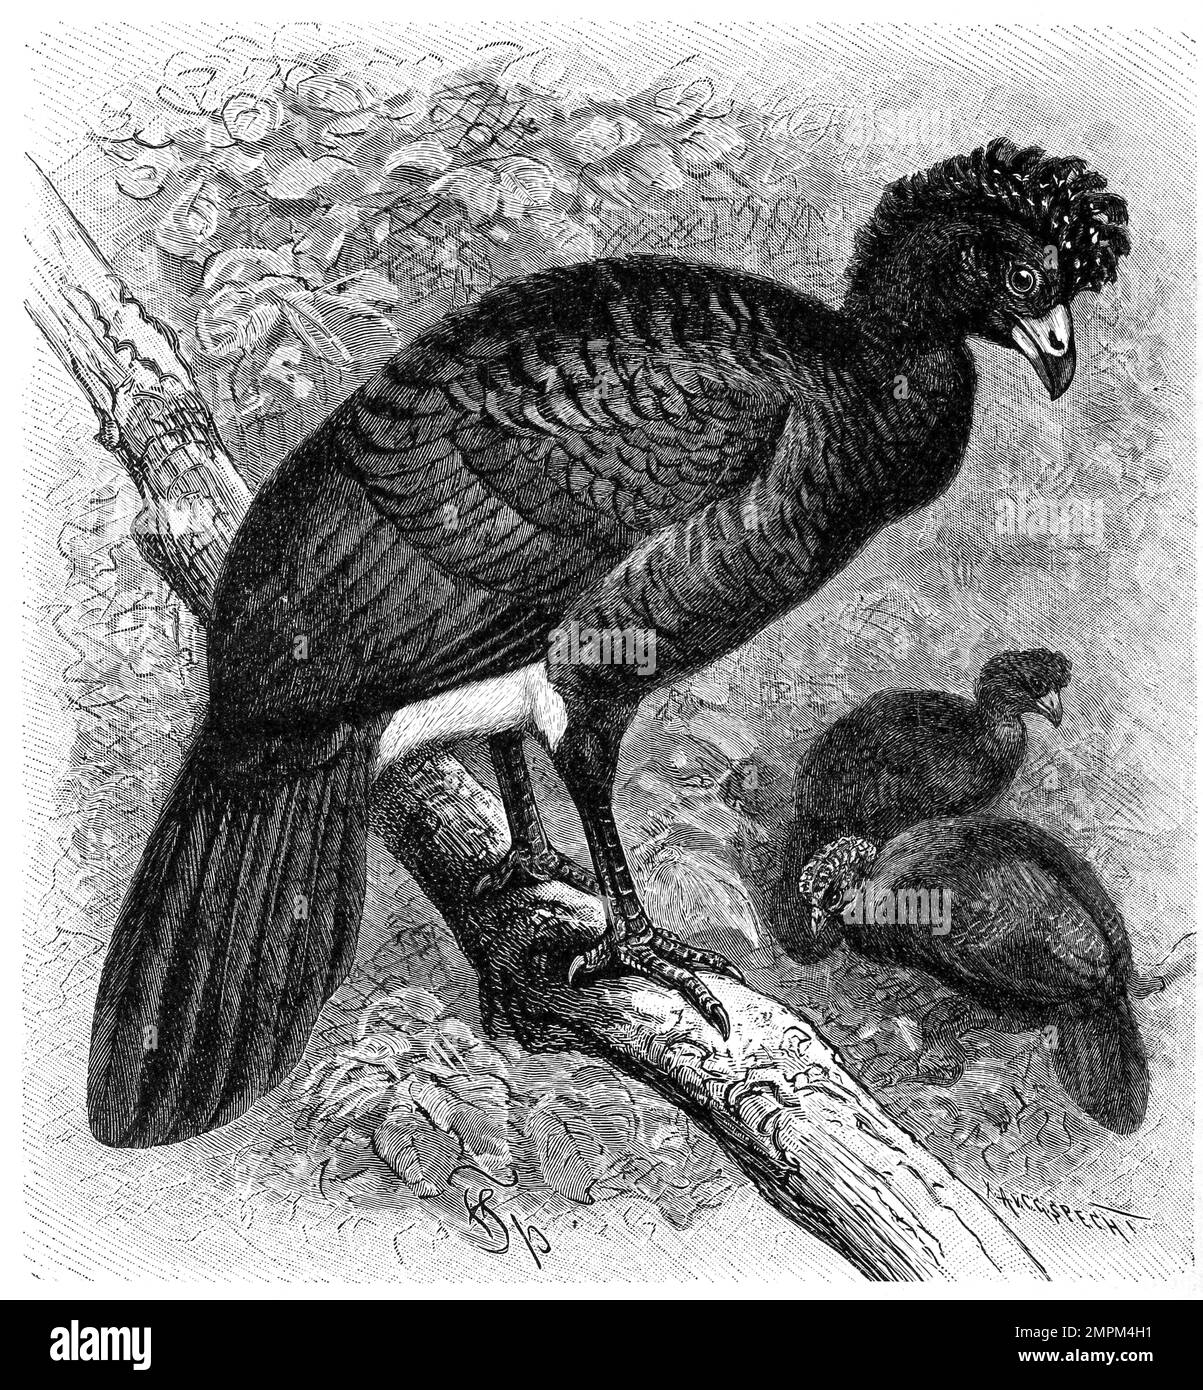 Vogel, Der schwarze Curassow, auch bekannt als Glattschnabel-Curassow und Crested Curassow, ist eine Vogelart aus der Familie Cracidae, Crax alector, Historisch, digital restaurierte Reproduktion von einer Vorlage aus dem 18. Jahrhundert Stock Photo